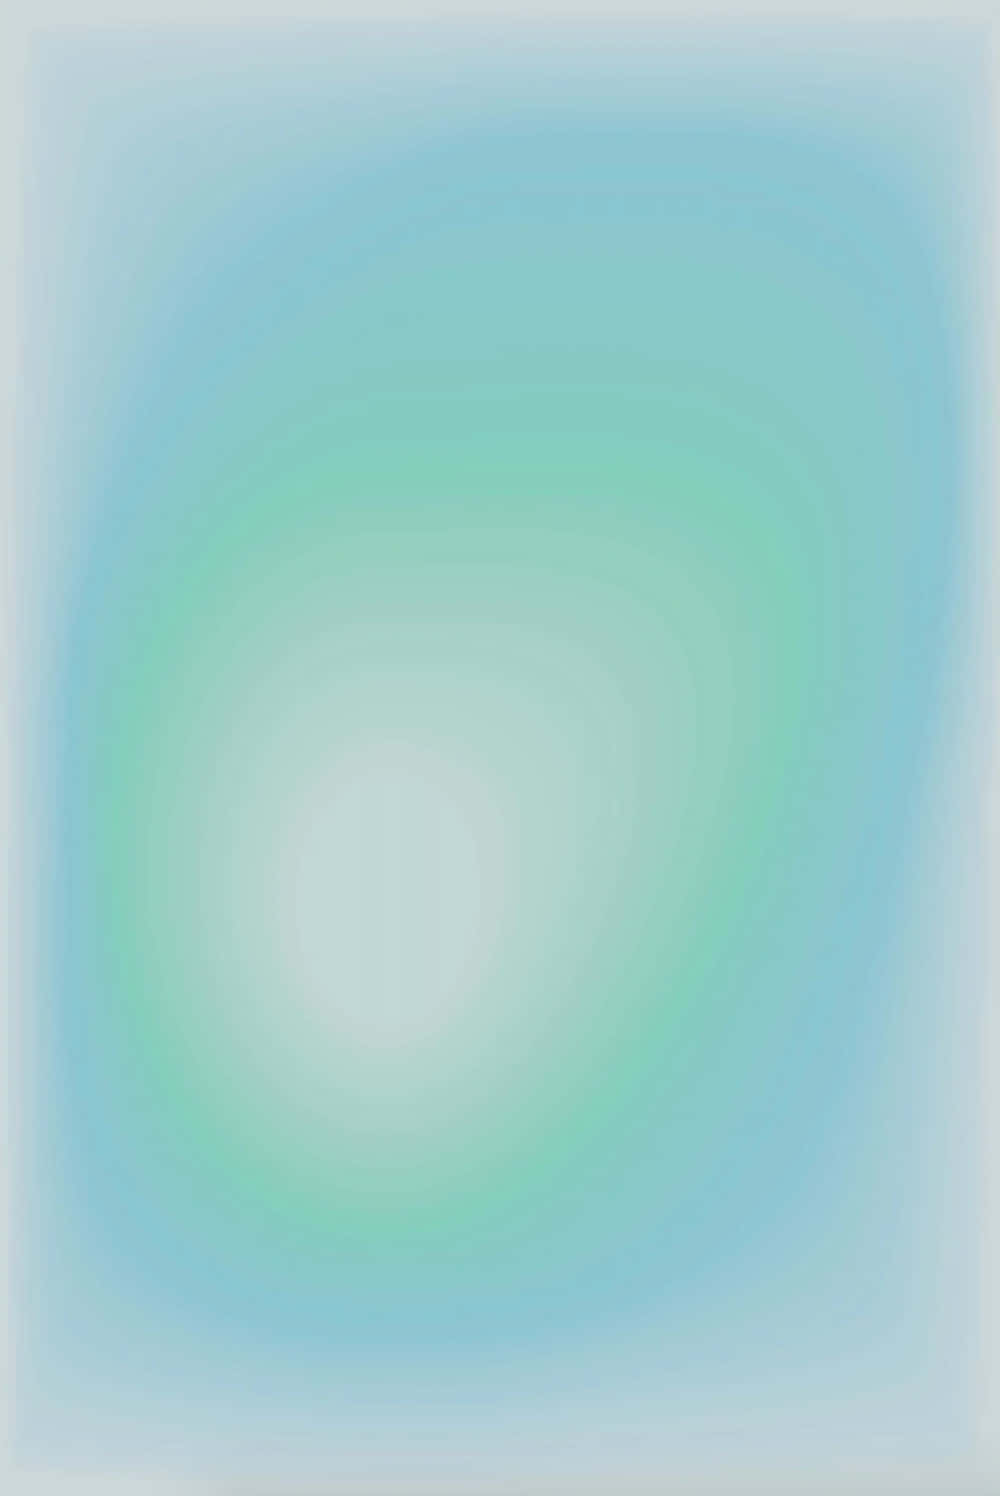 Enblå Och Grön Abstrakt Målning På En Vit Bakgrund. Wallpaper